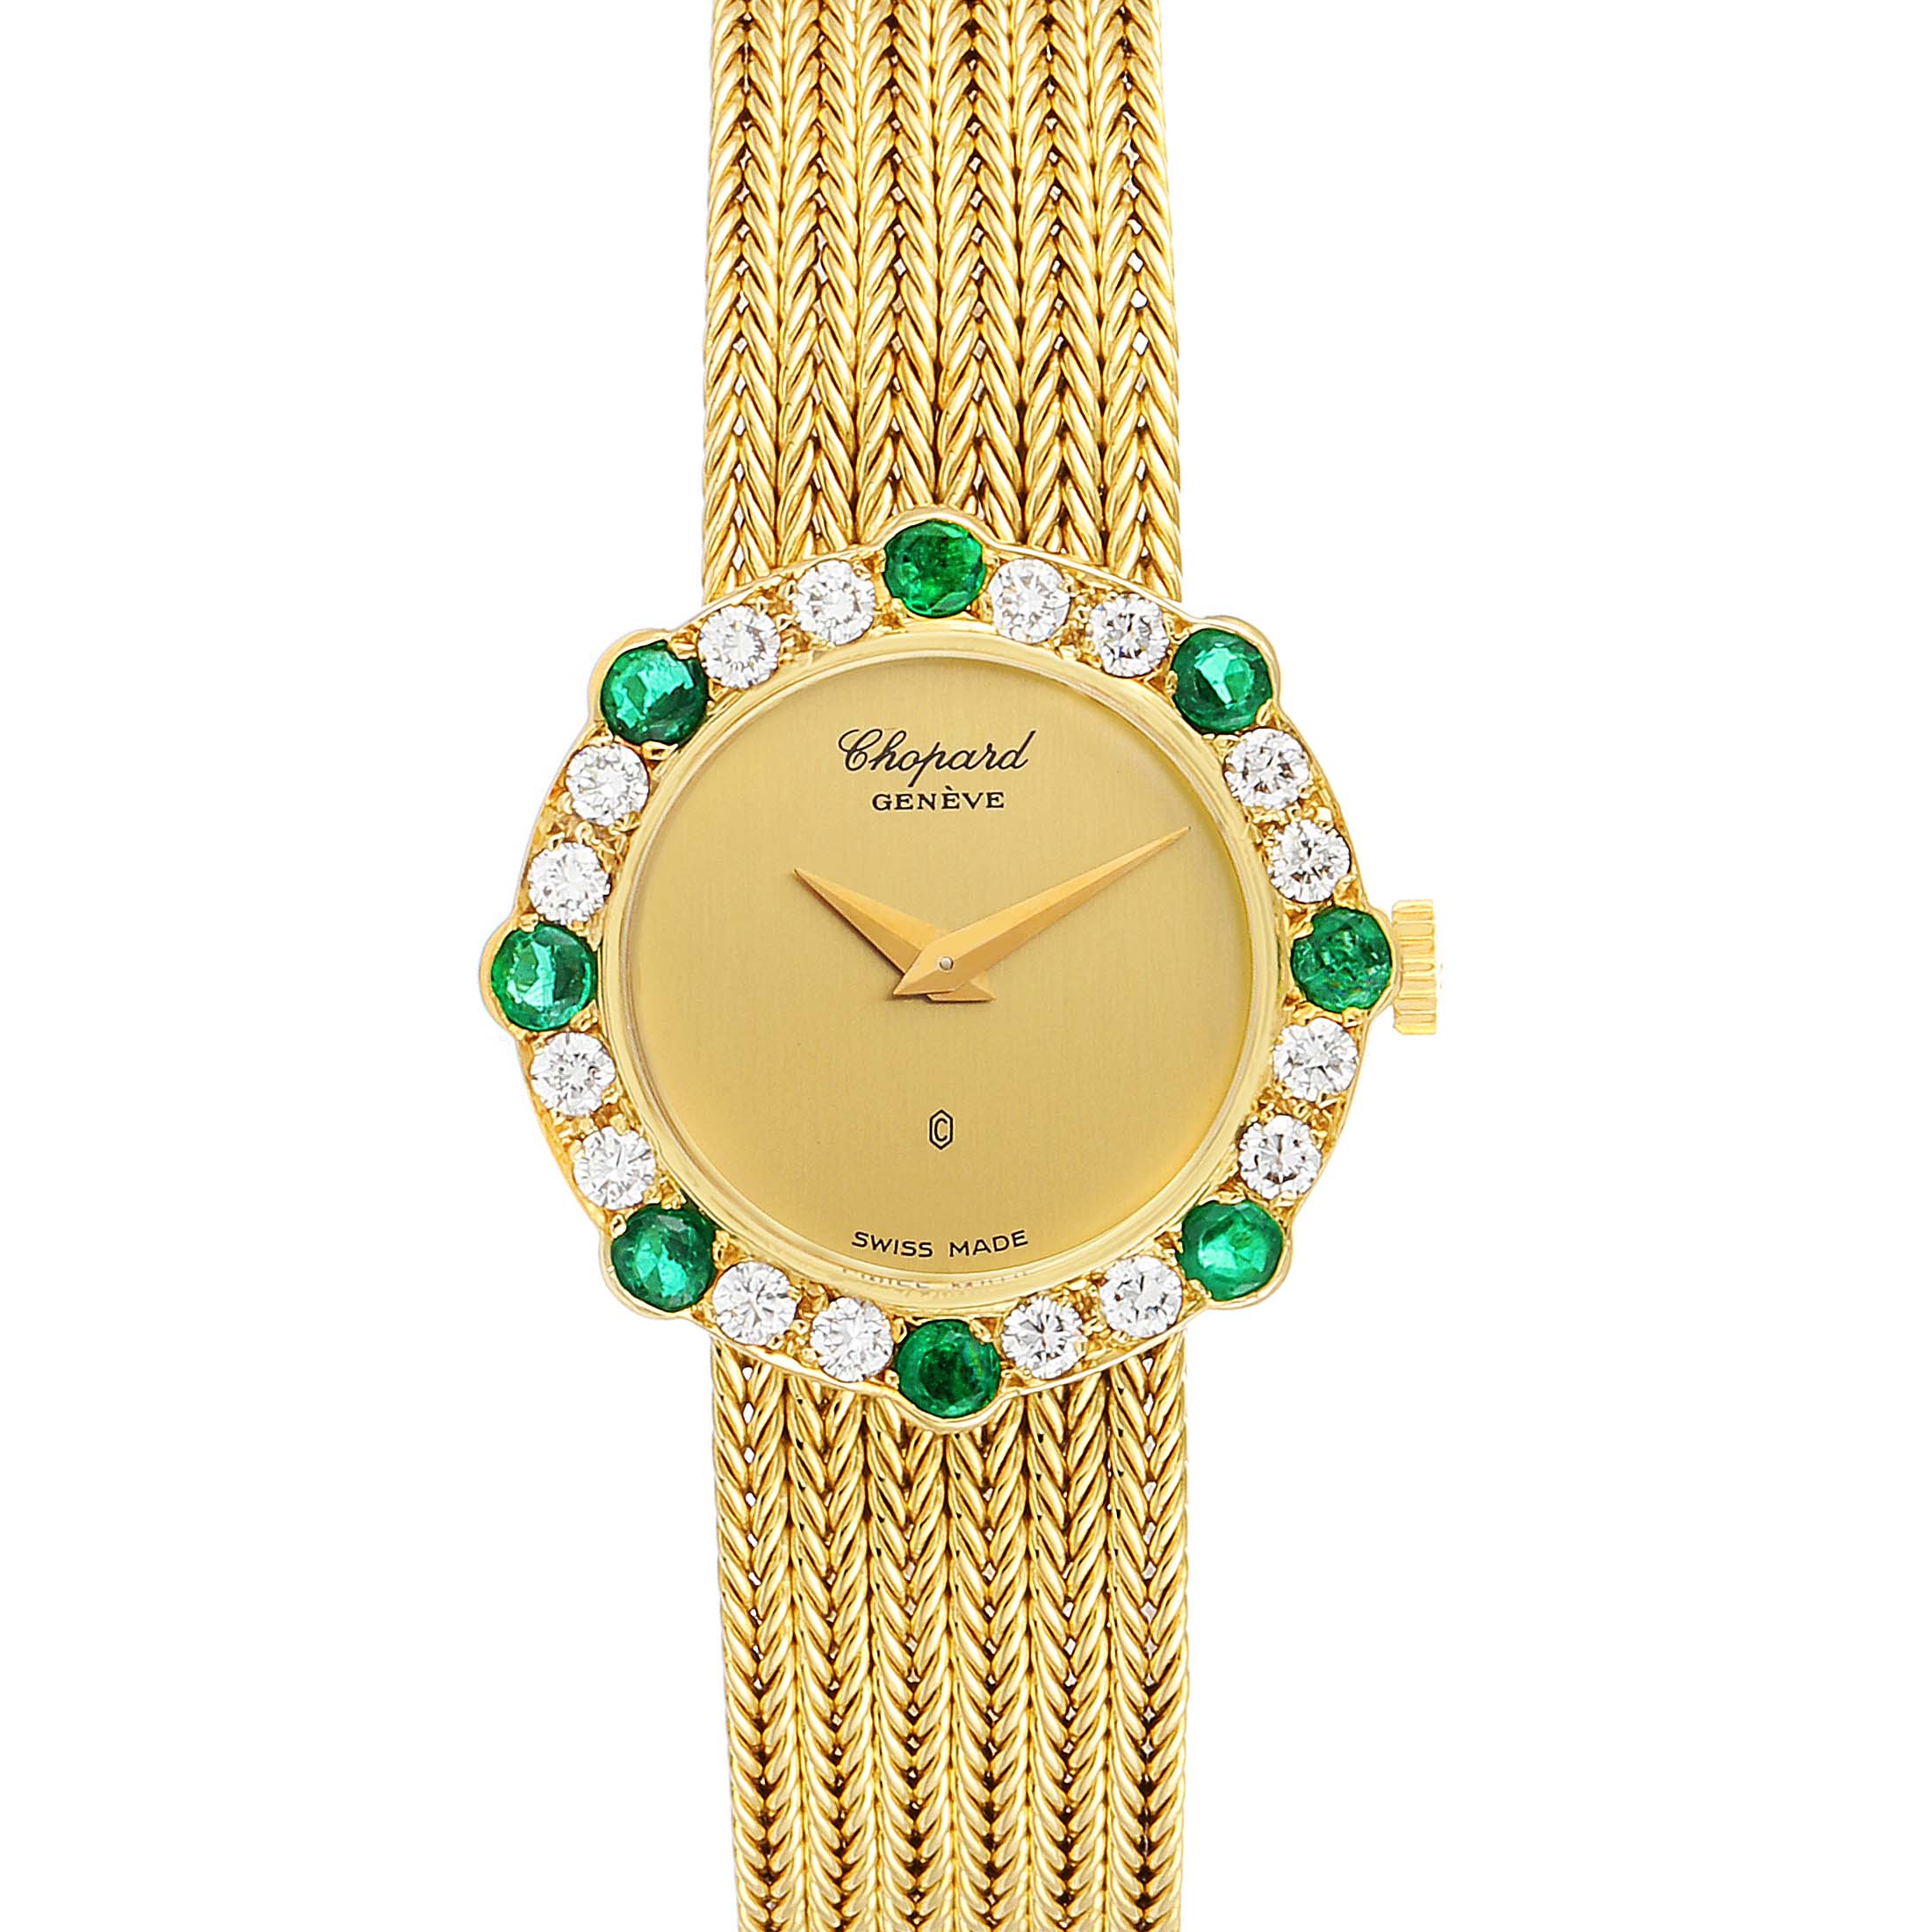 Details more than 156 chopard emerald watch best - vietkidsiq.edu.vn